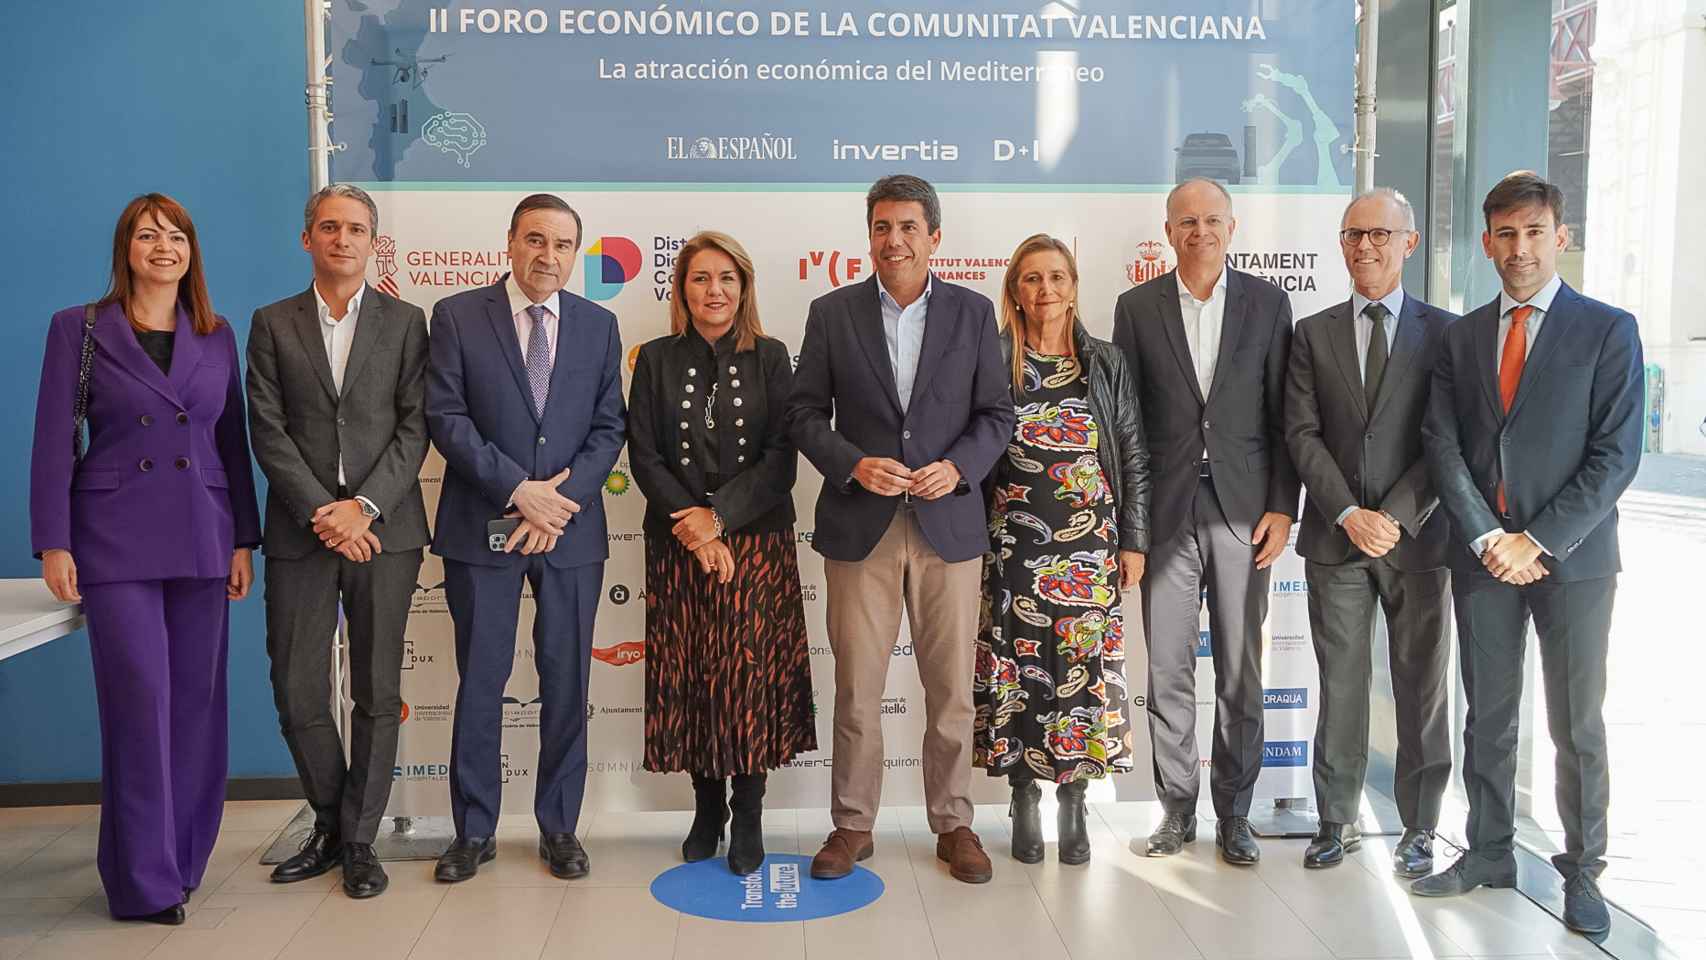 Primera jornada del II Foro Económico de la Comunitat Valenciana 'La atracción económica del Mediterráneo'